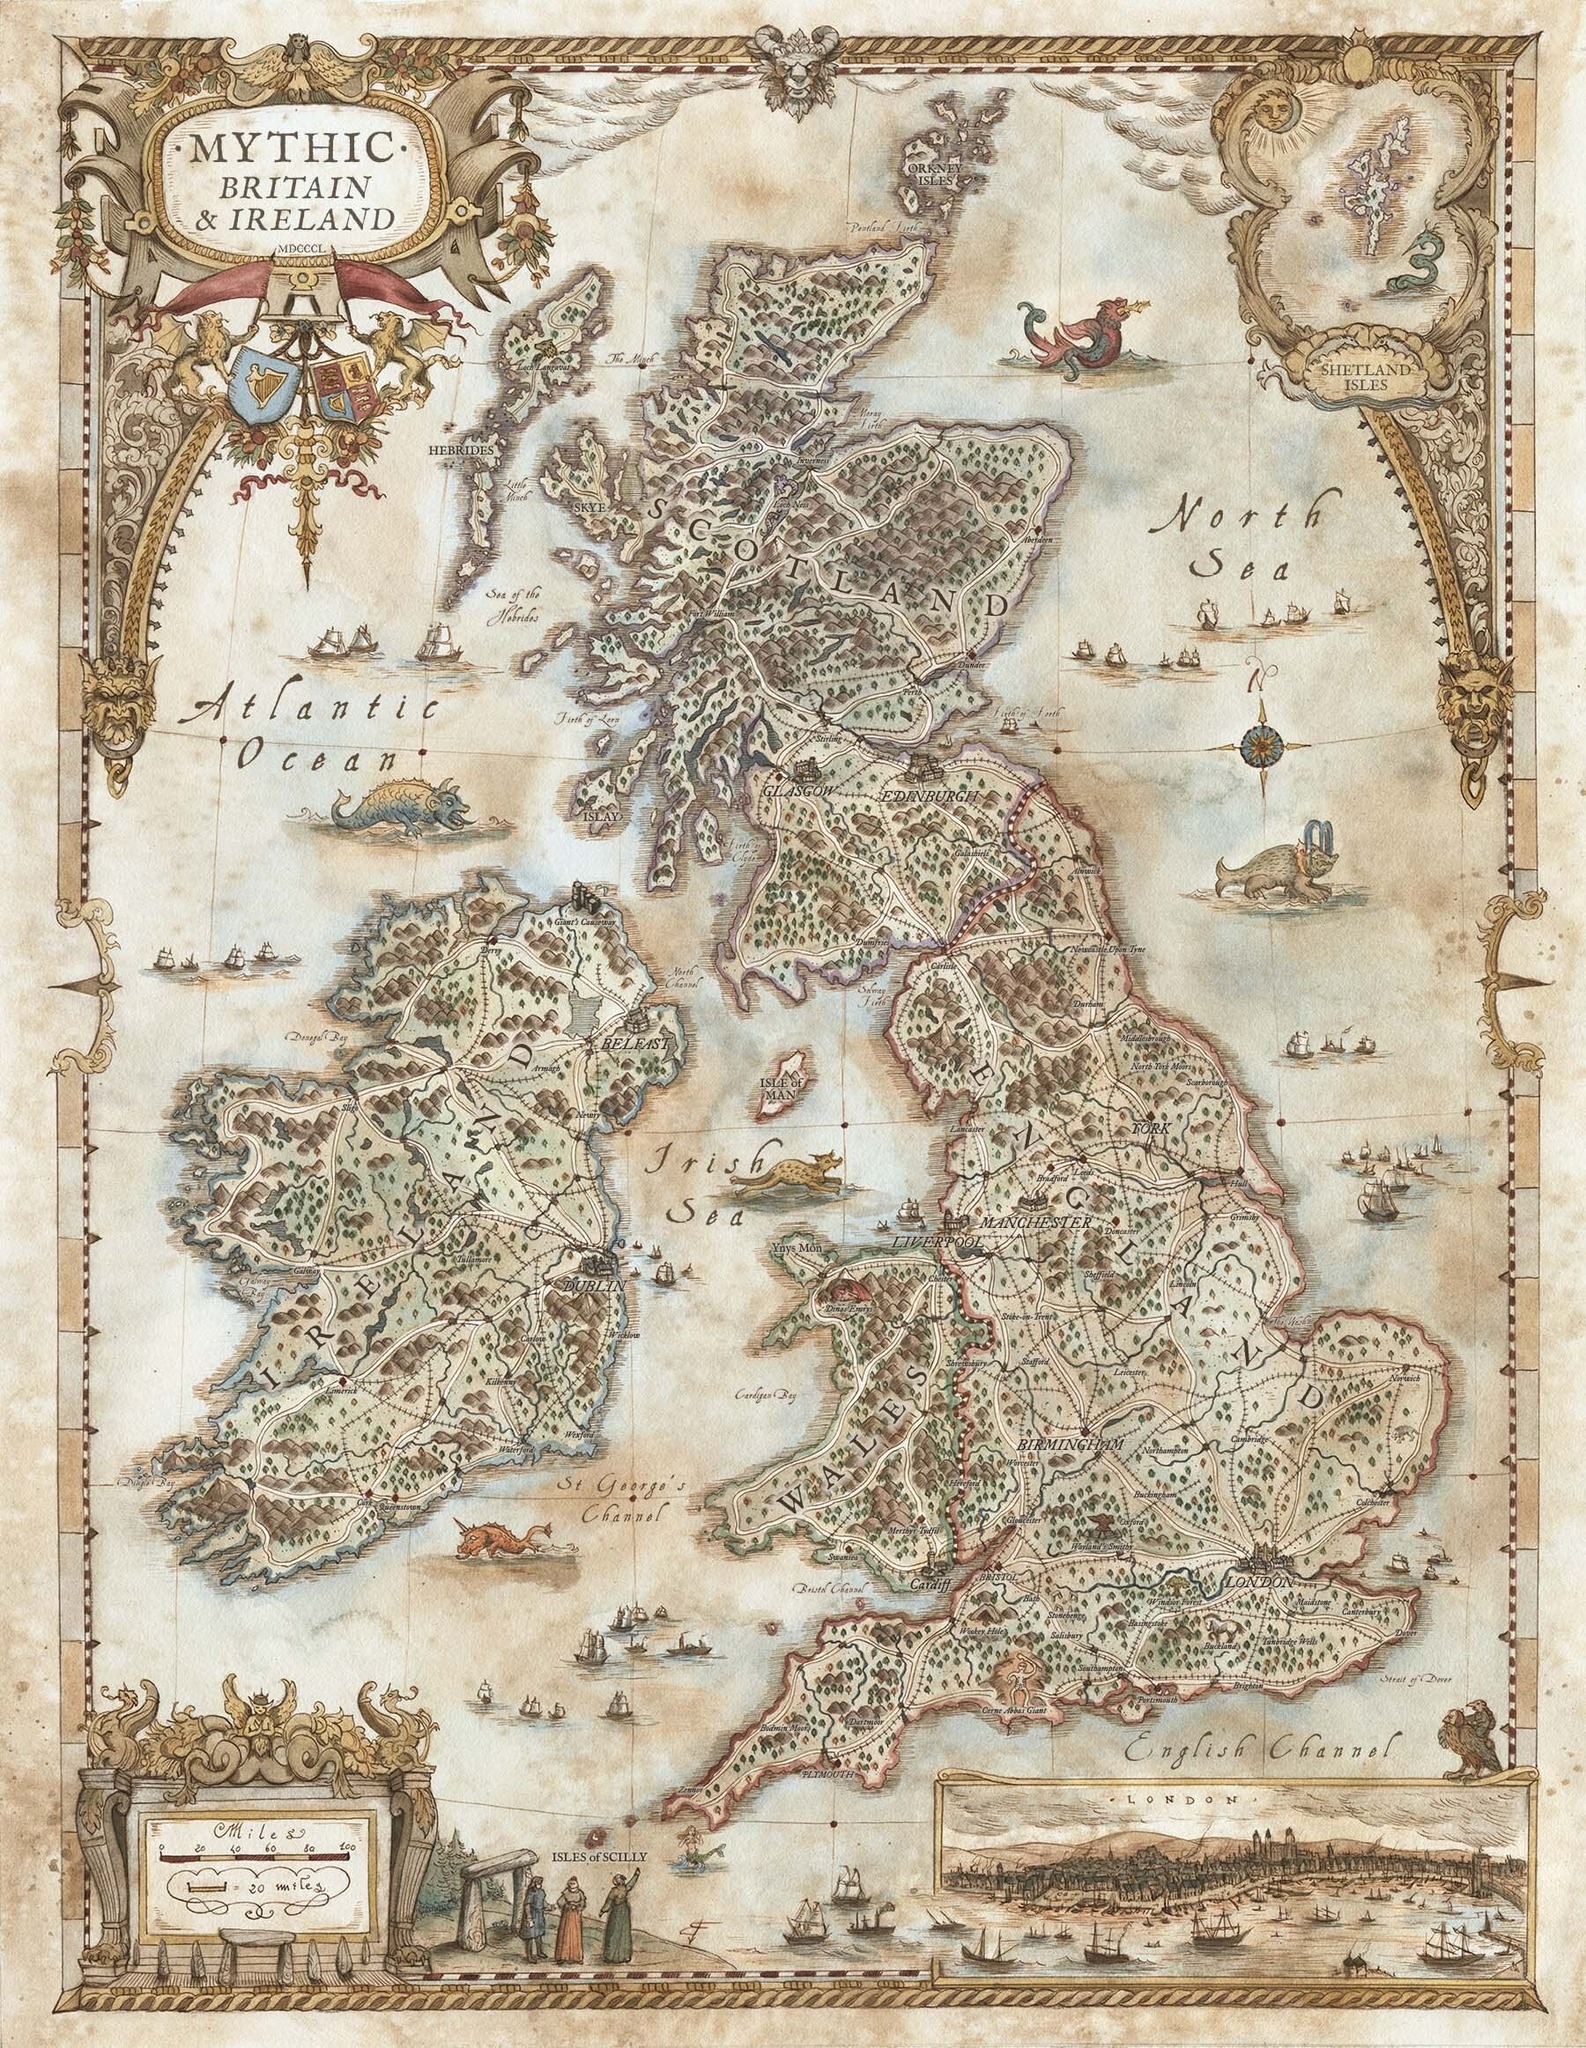 Mythic Britain & Ireland Map - Vaesen